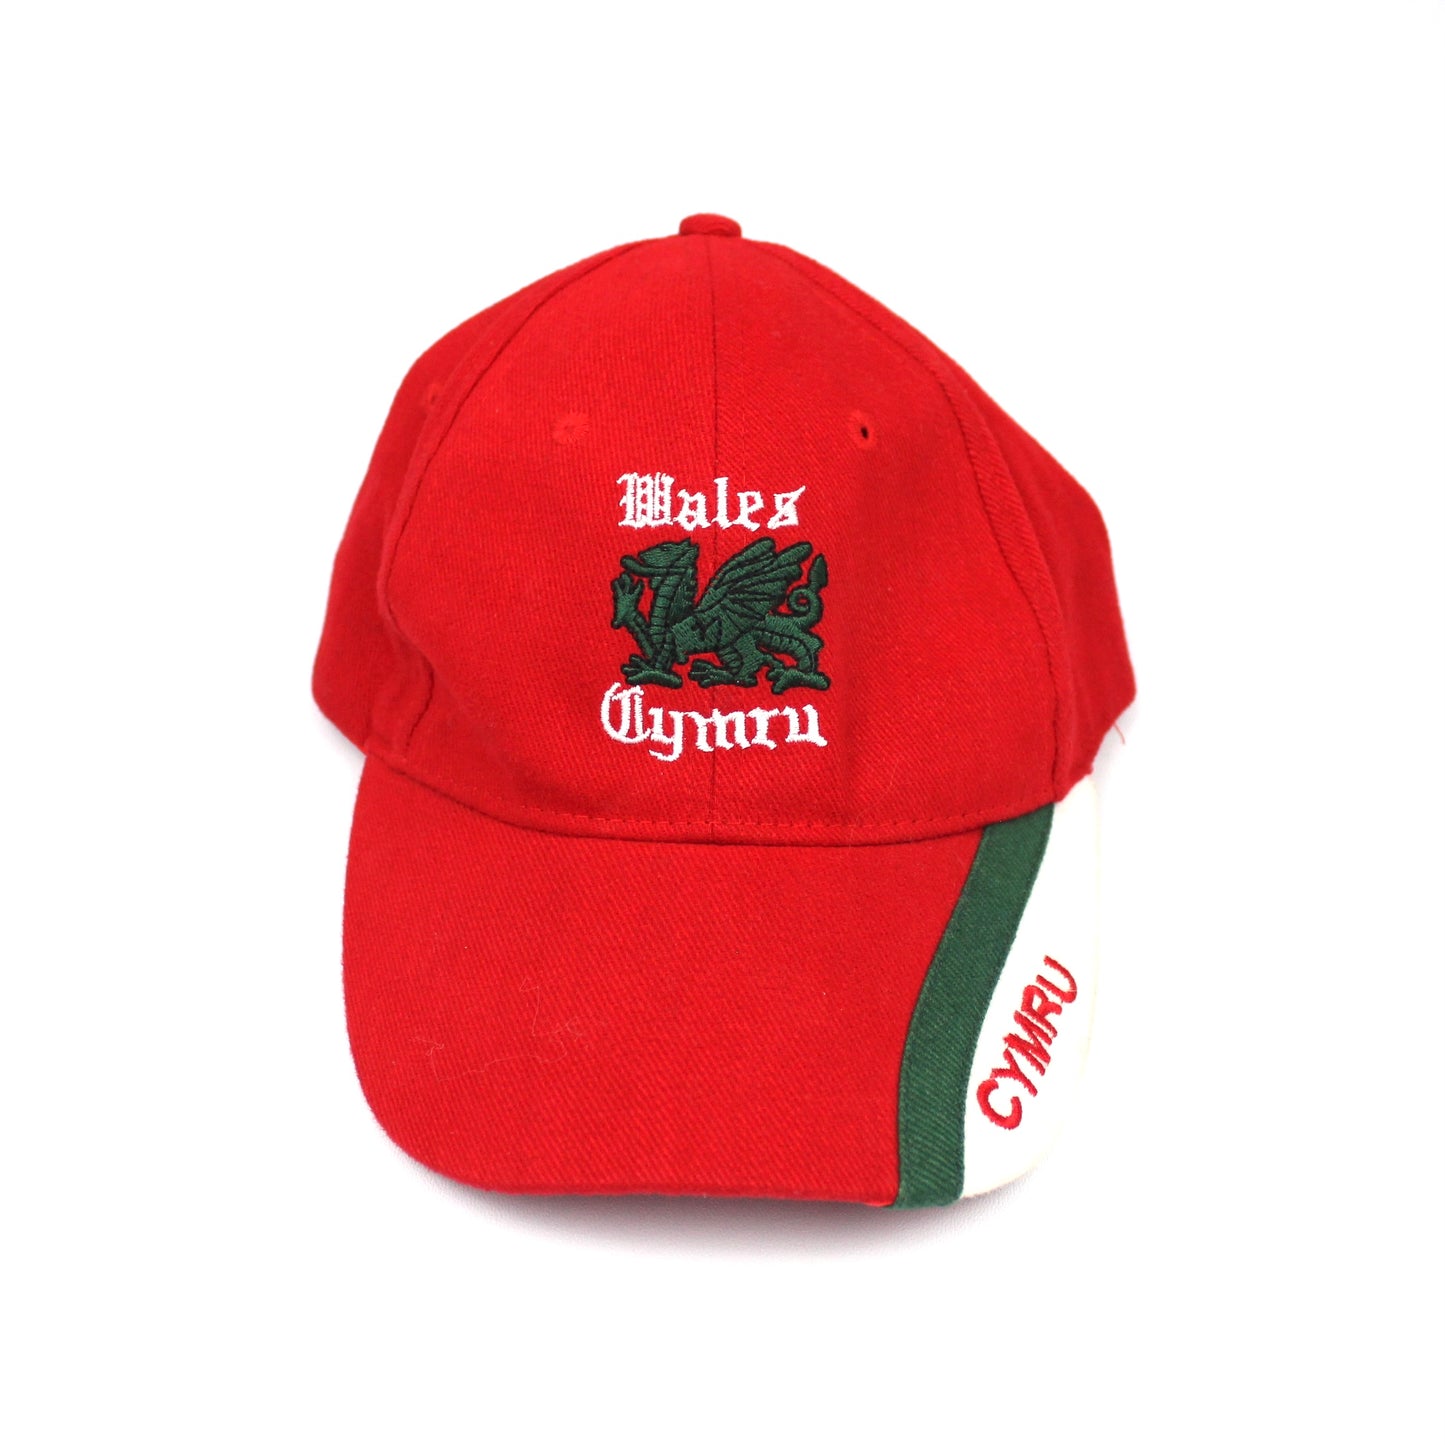 Vintage Wales Cymru Cap